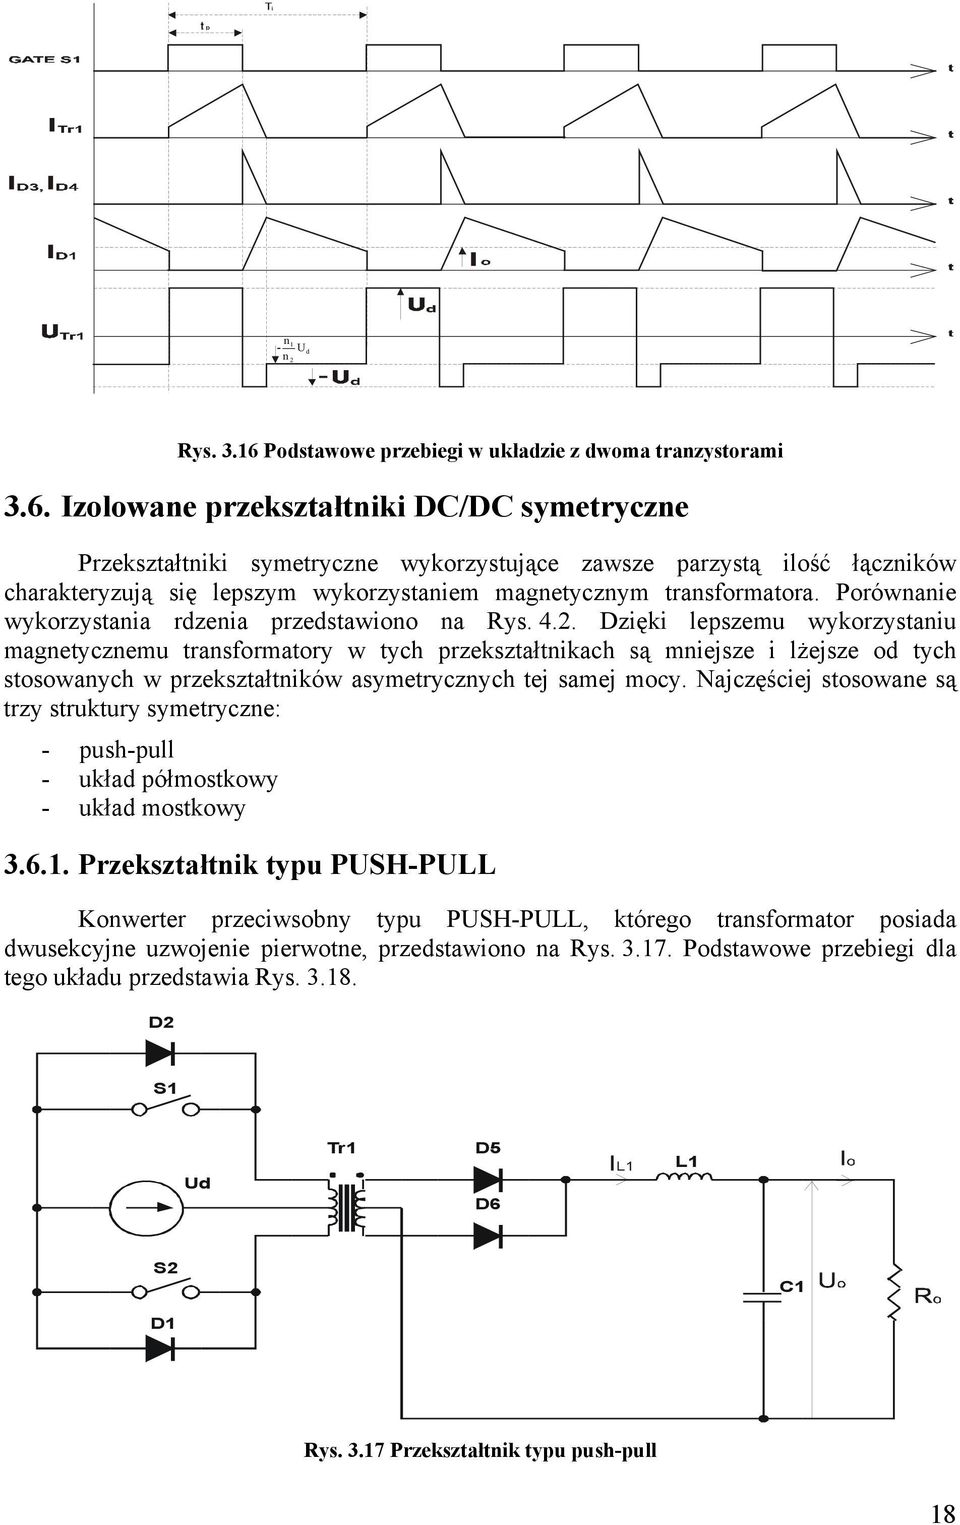 Izolowane przekształtniki DC/DC symetryczne Przekształtniki symetryczne wykorzystujące zawsze parzystą ilość łączników charakteryzują się lepszym wykorzystaniem magnetycznym transformatora.